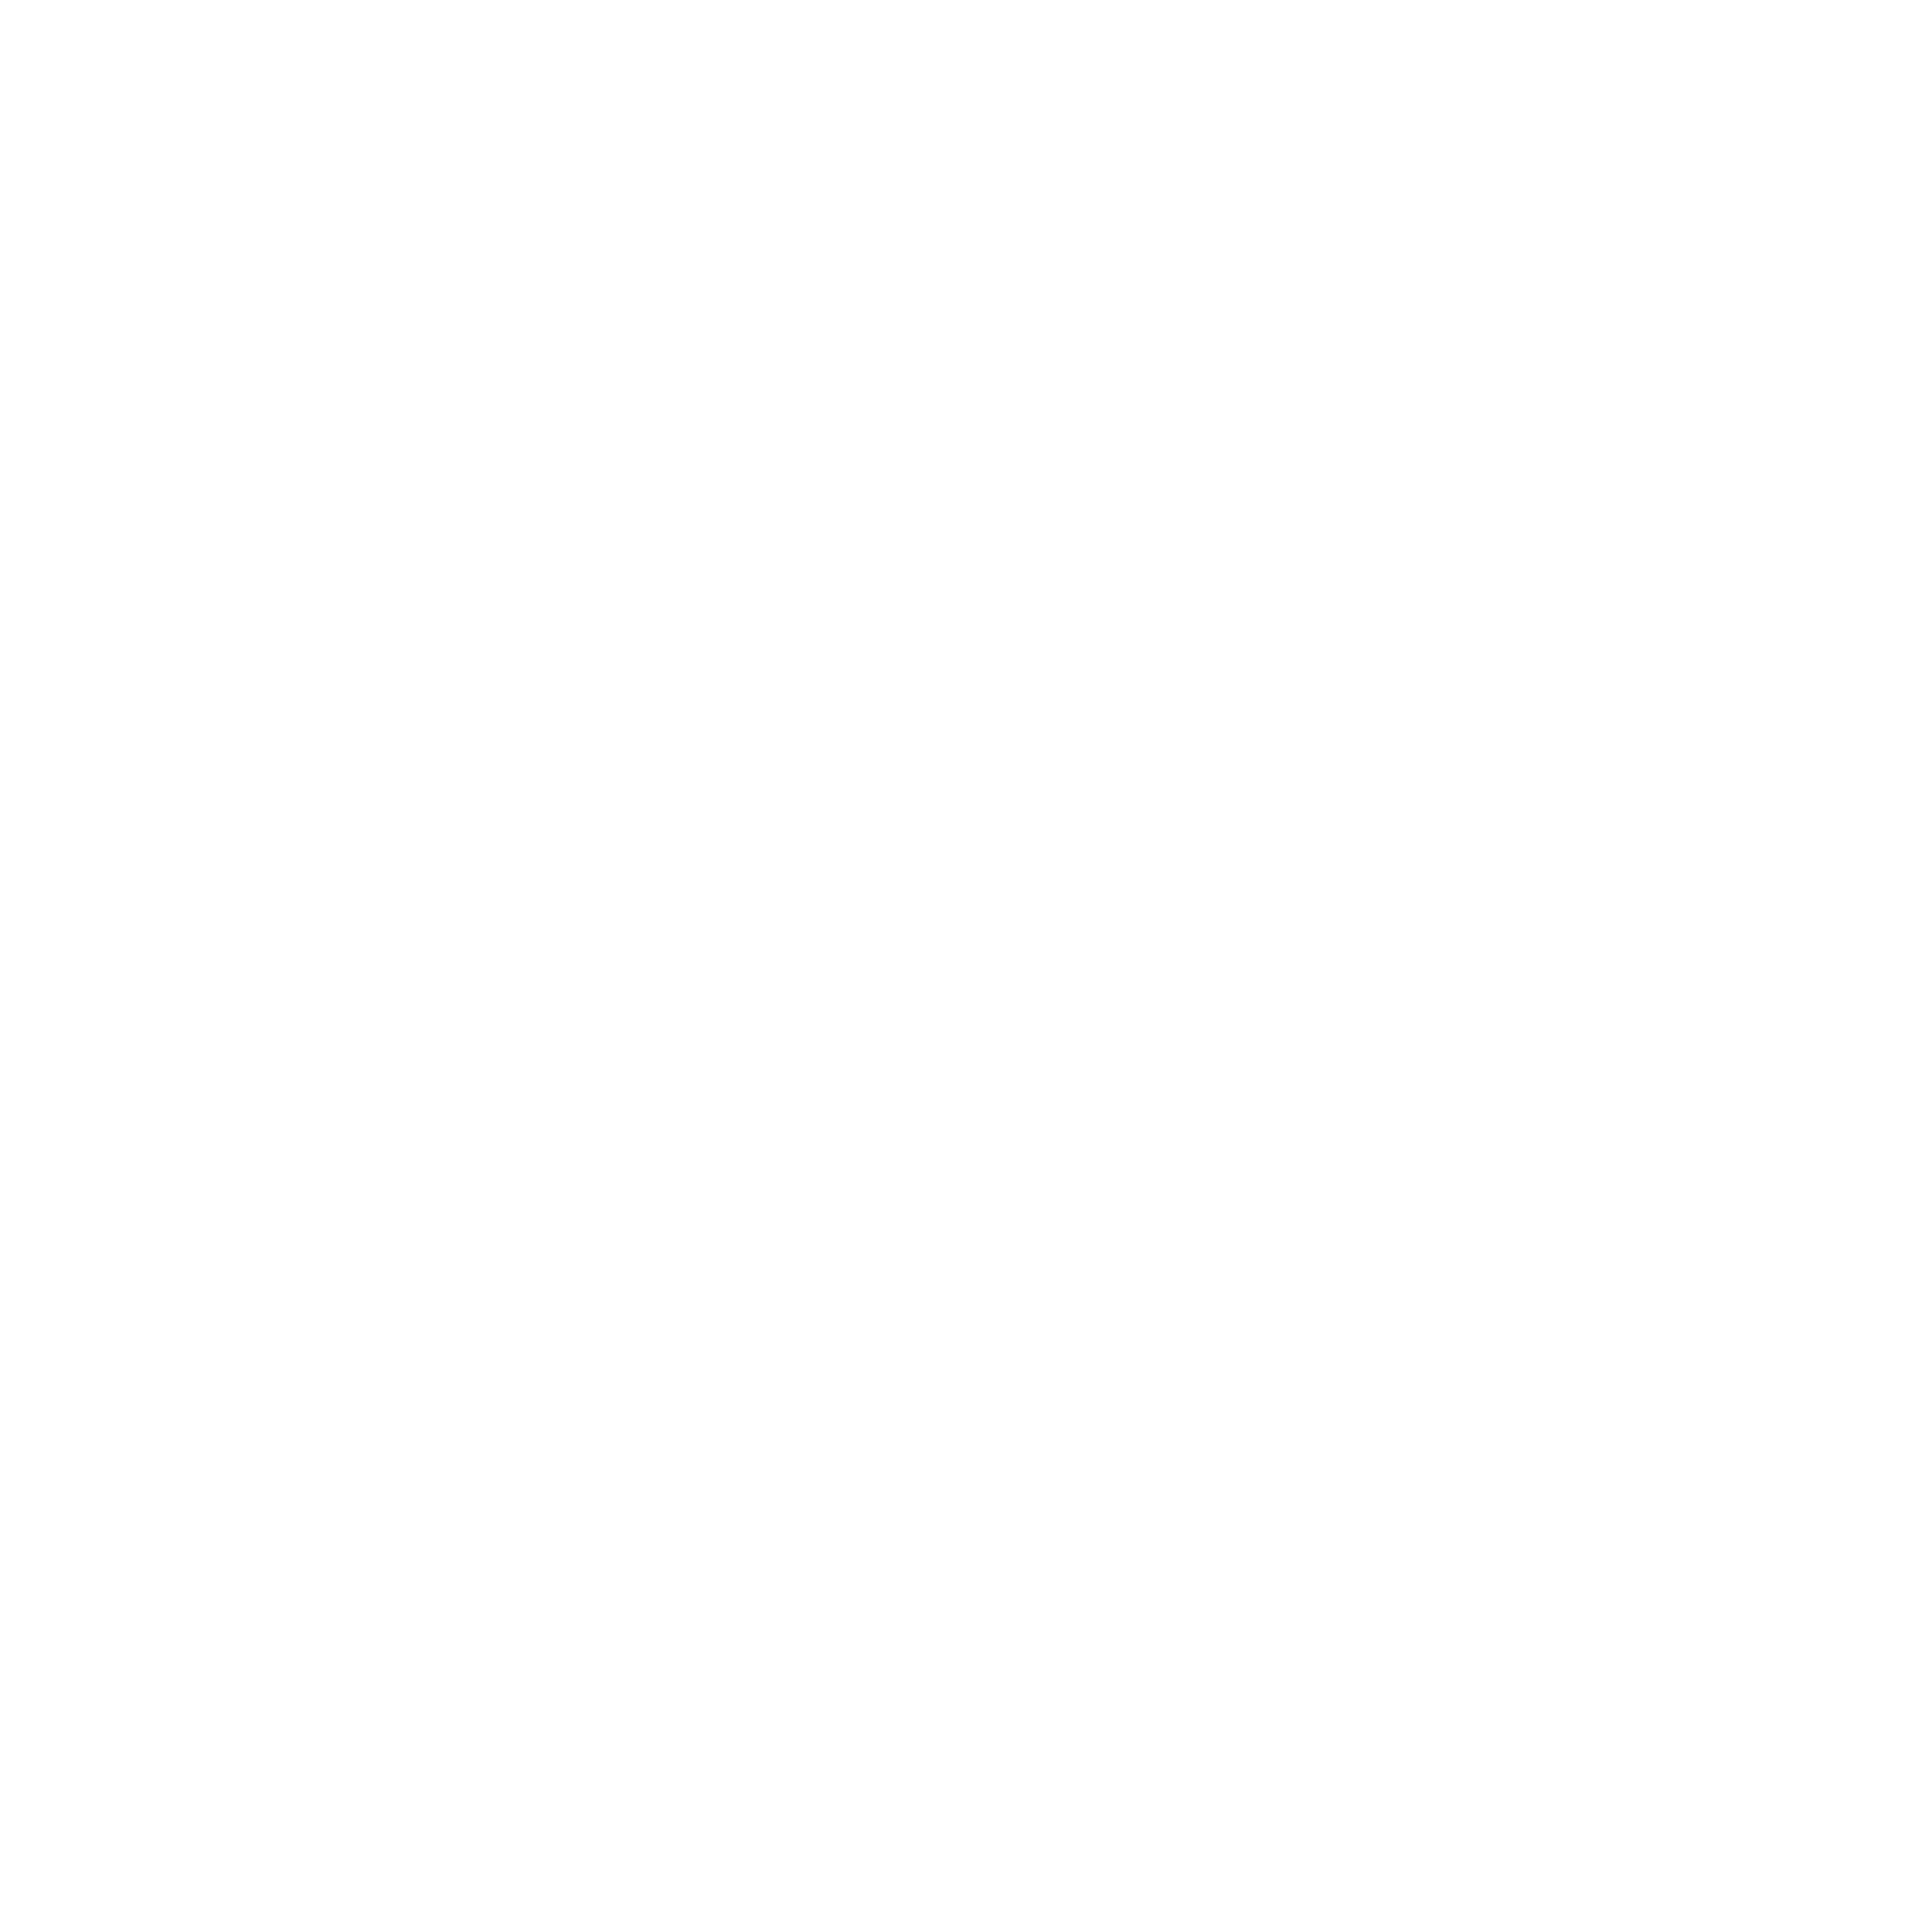 Wie konfiguriere ich die HOOC-Lösung?